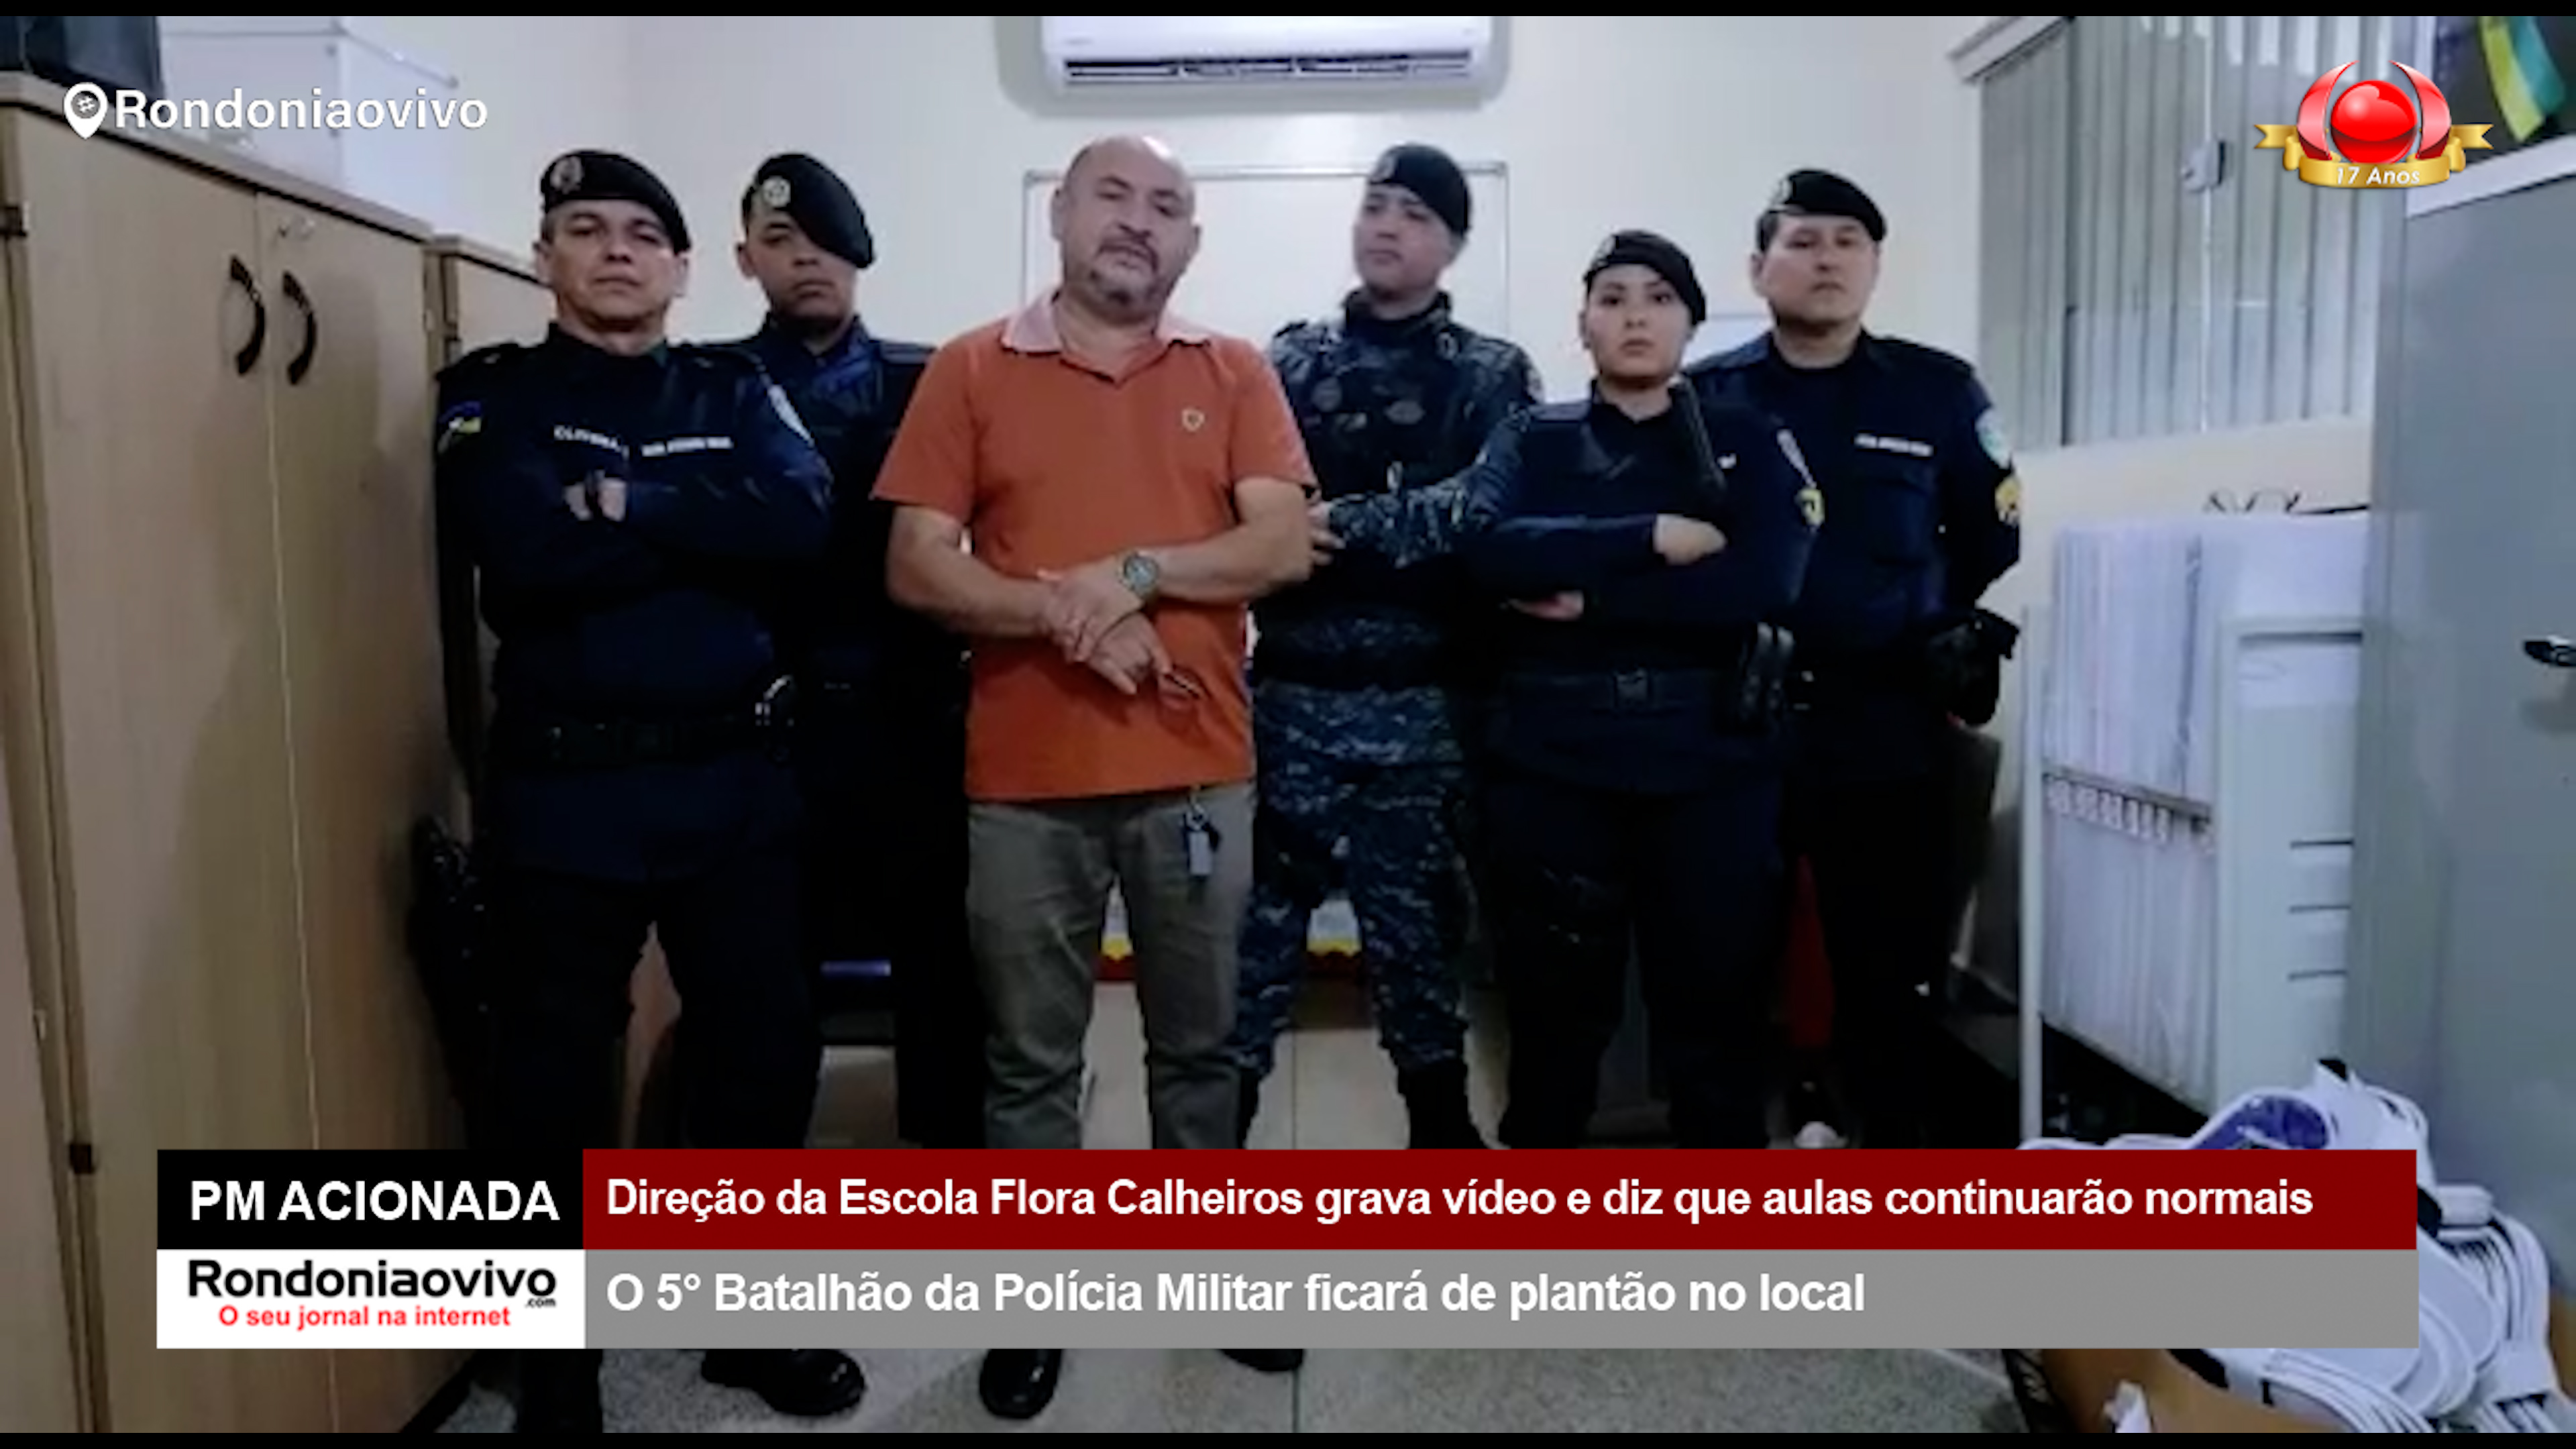 PM ACIONADA: Direção da Escola Flora Calheiros grava vídeo e diz que aulas continuarão normais